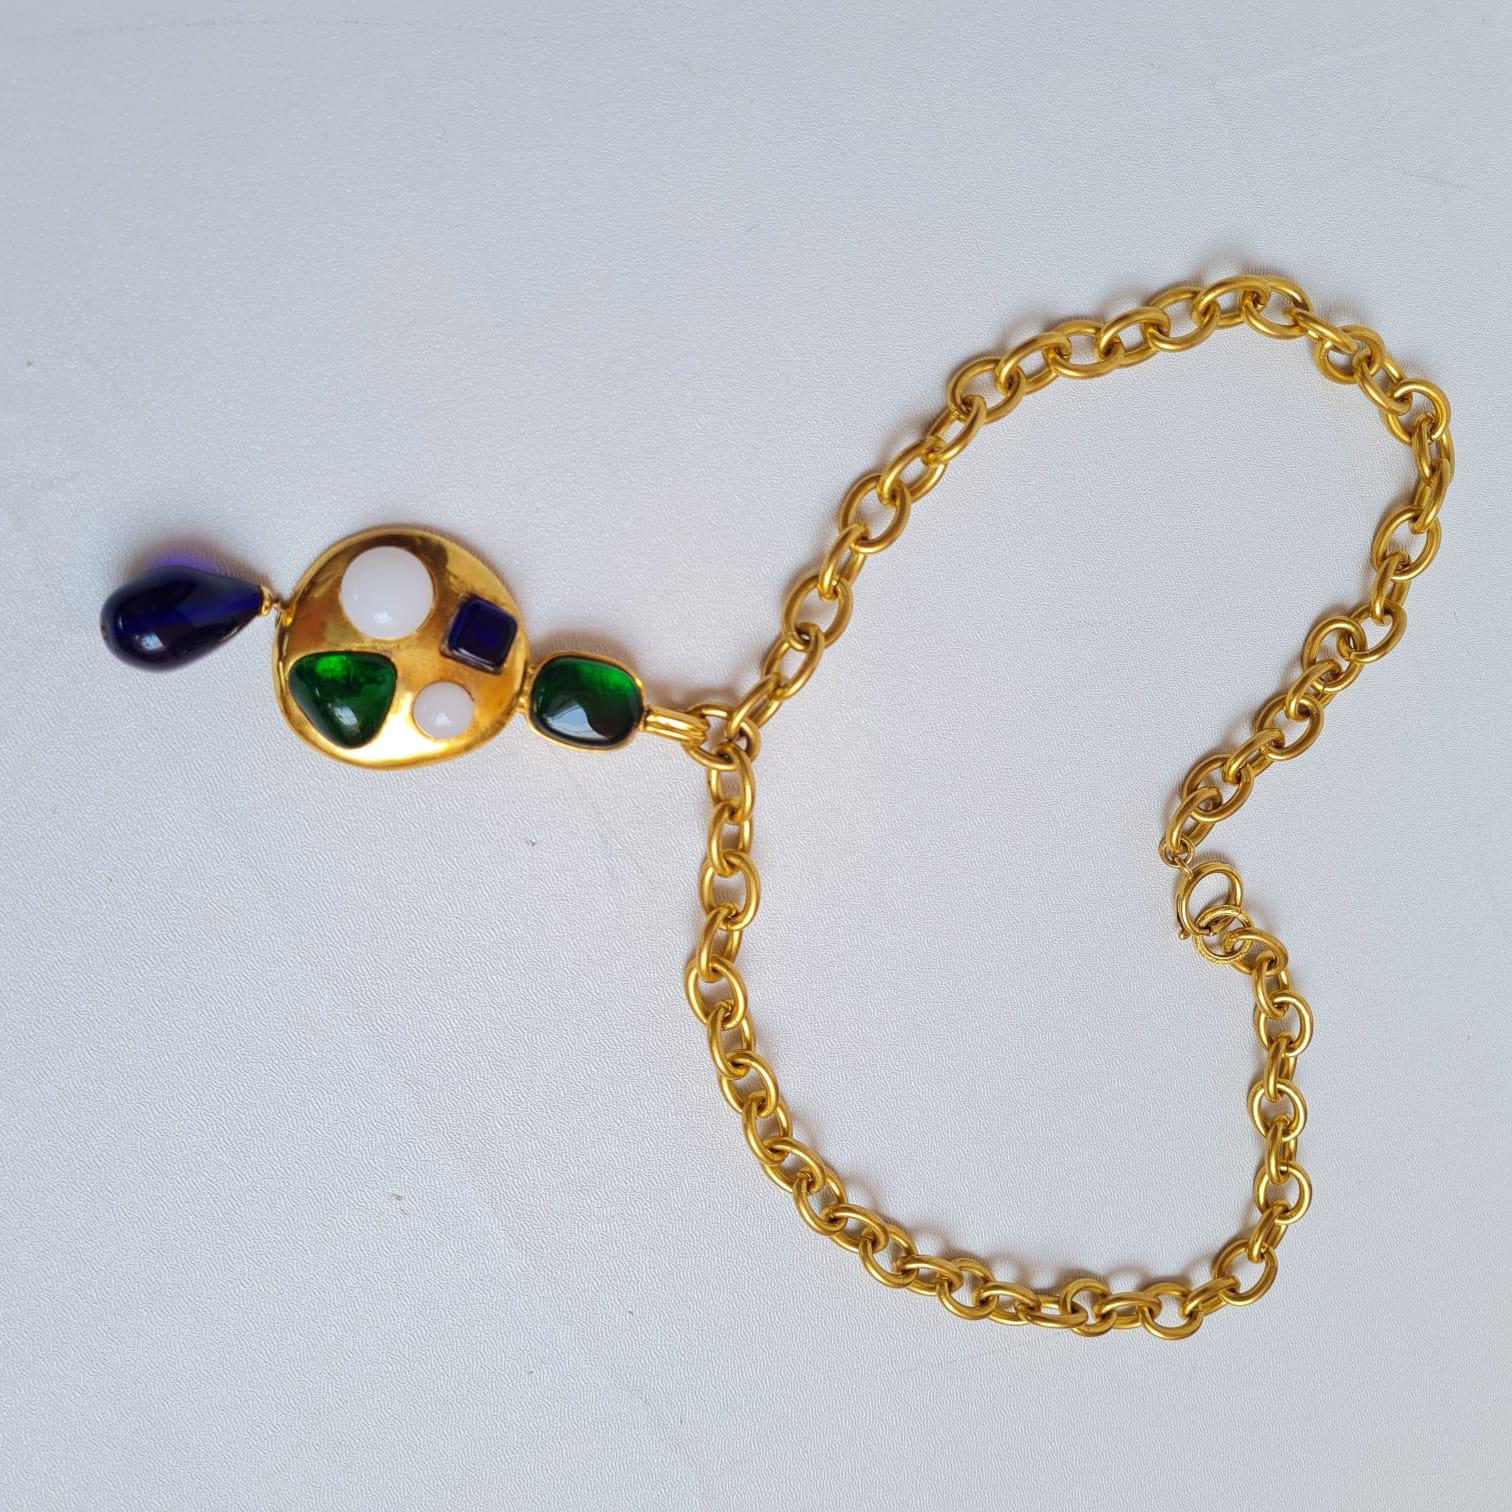 Sehr seltene Chanel Gripoix Gold Tropfen Perlenkette. Insgesamt in ausgezeichnetem Vintage-Zustand. Ein Sammlerstück. Es kommt, wie es kommt.